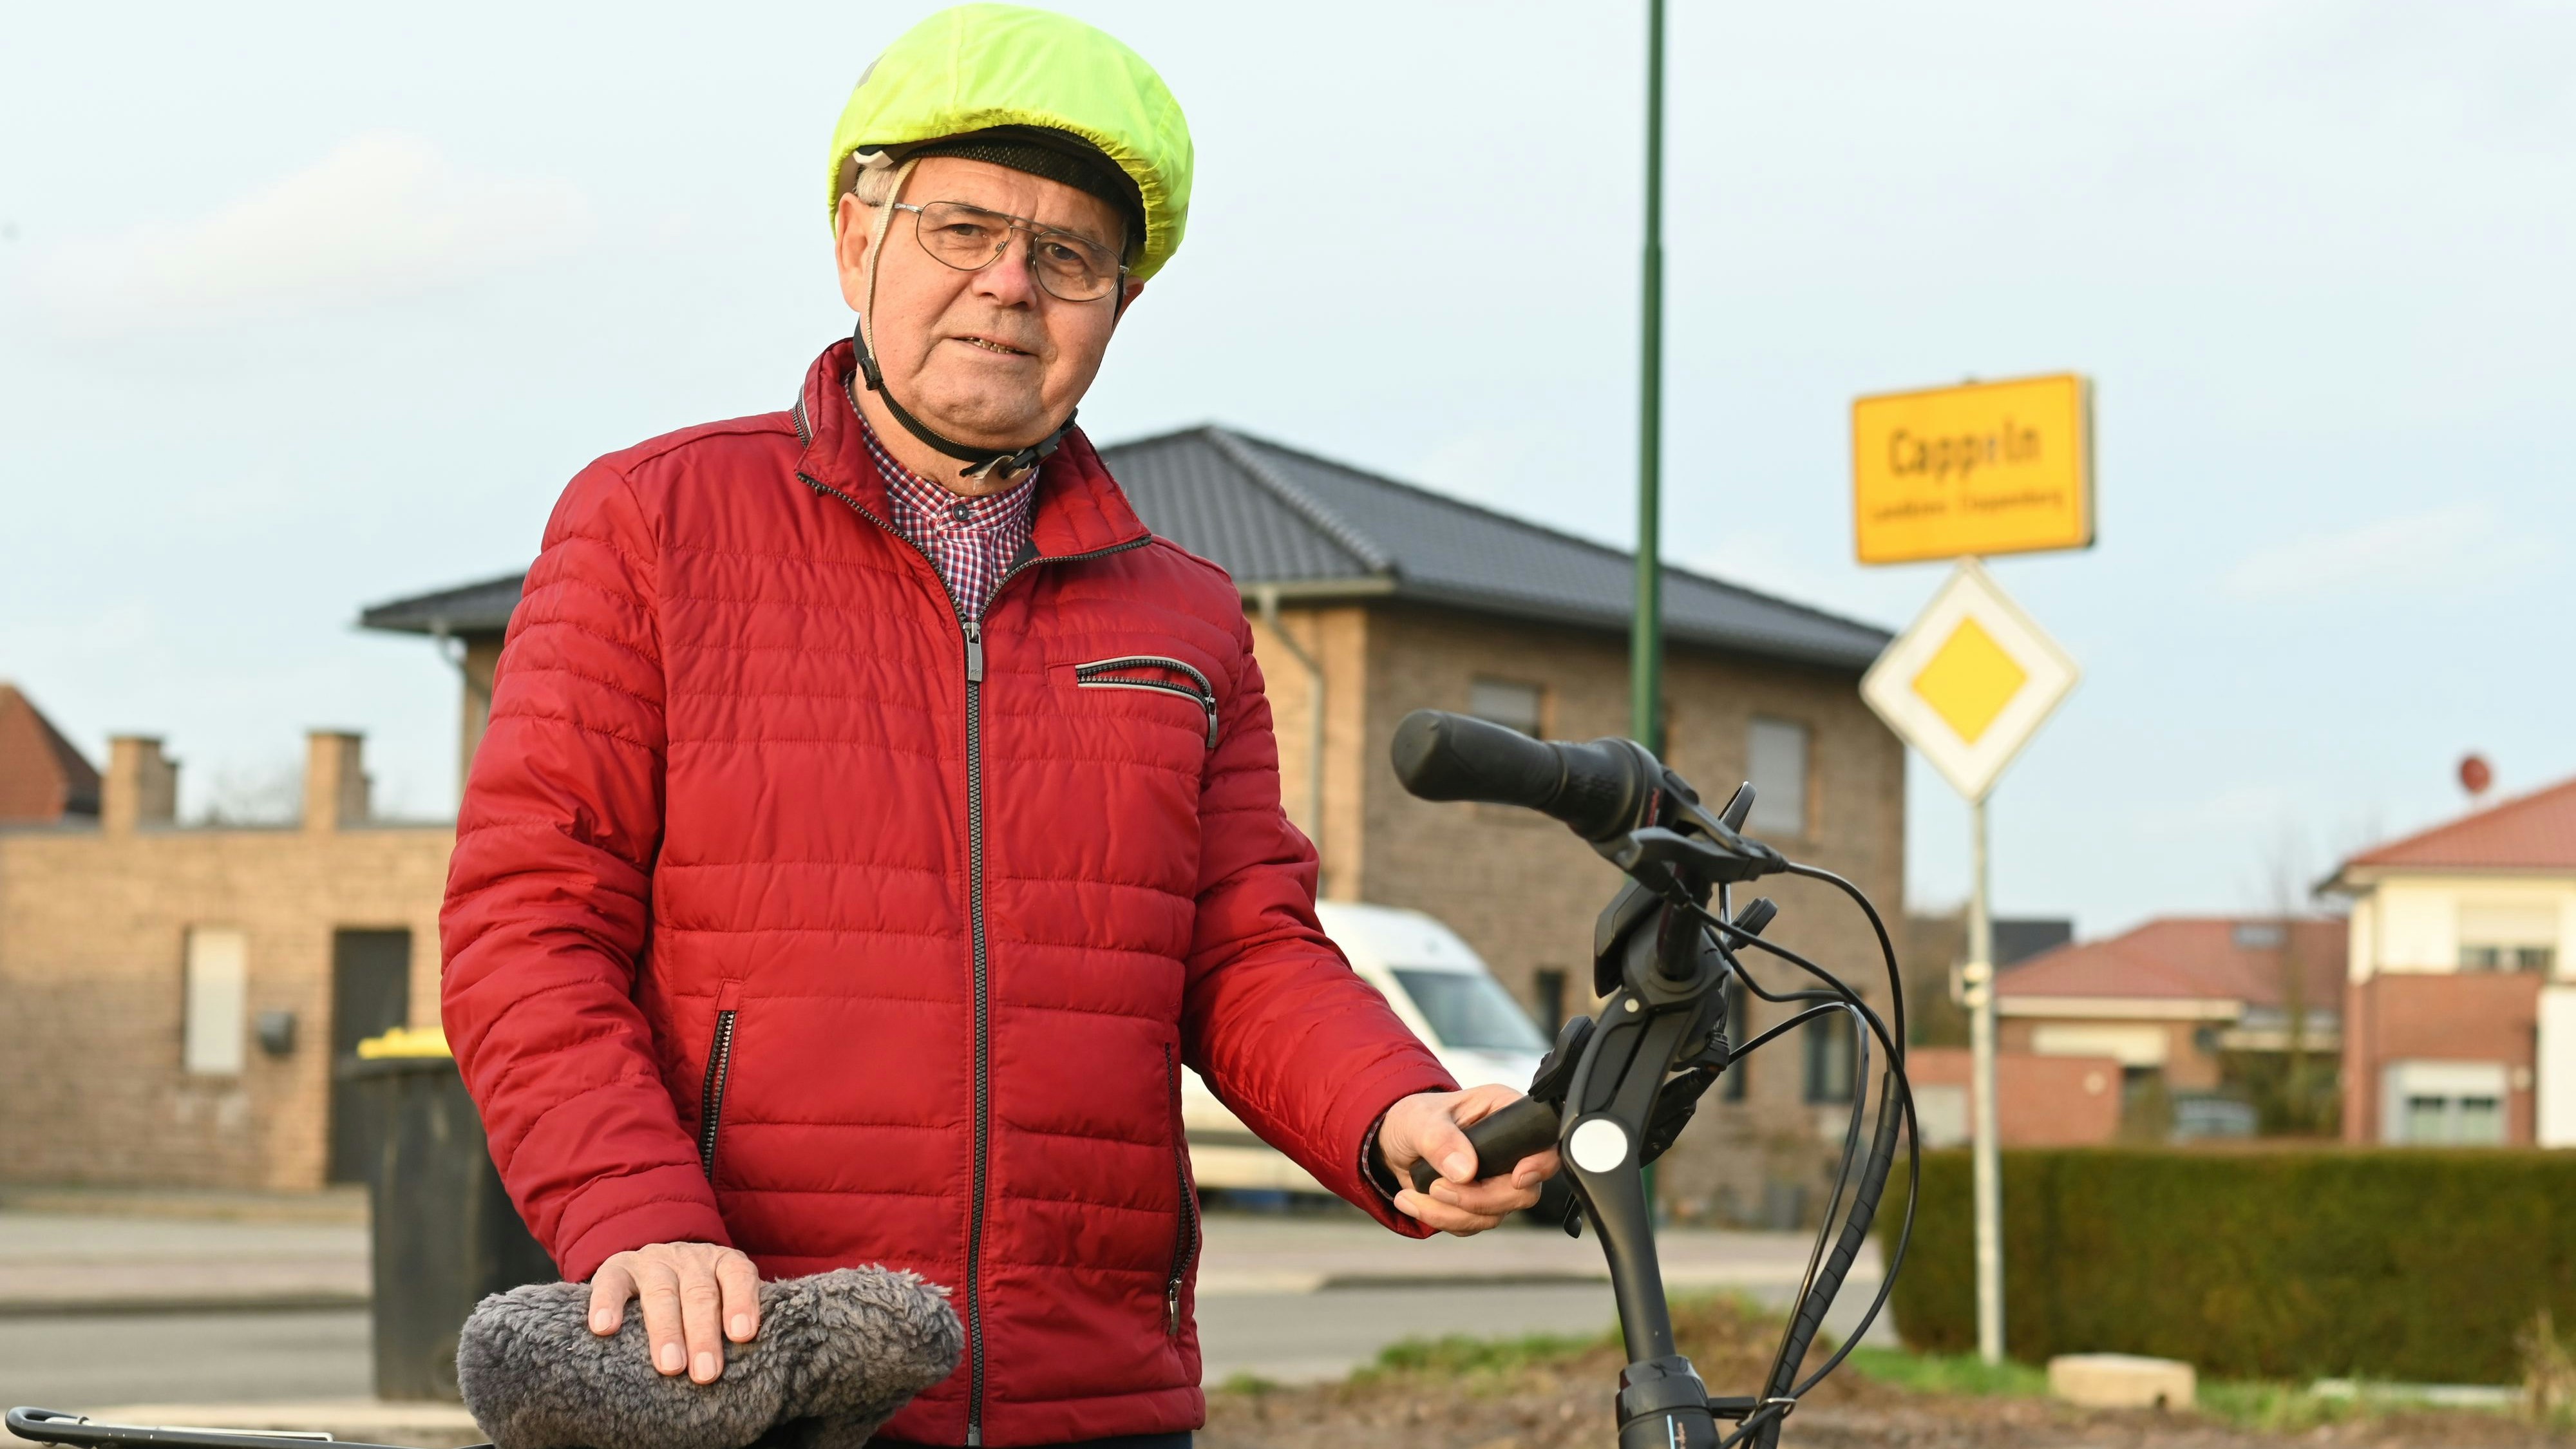 In seinem Element: Wolfgang Hartke liebt es, mit dem Fahrrad unterwegs zu sein. Foto: Vorwerk